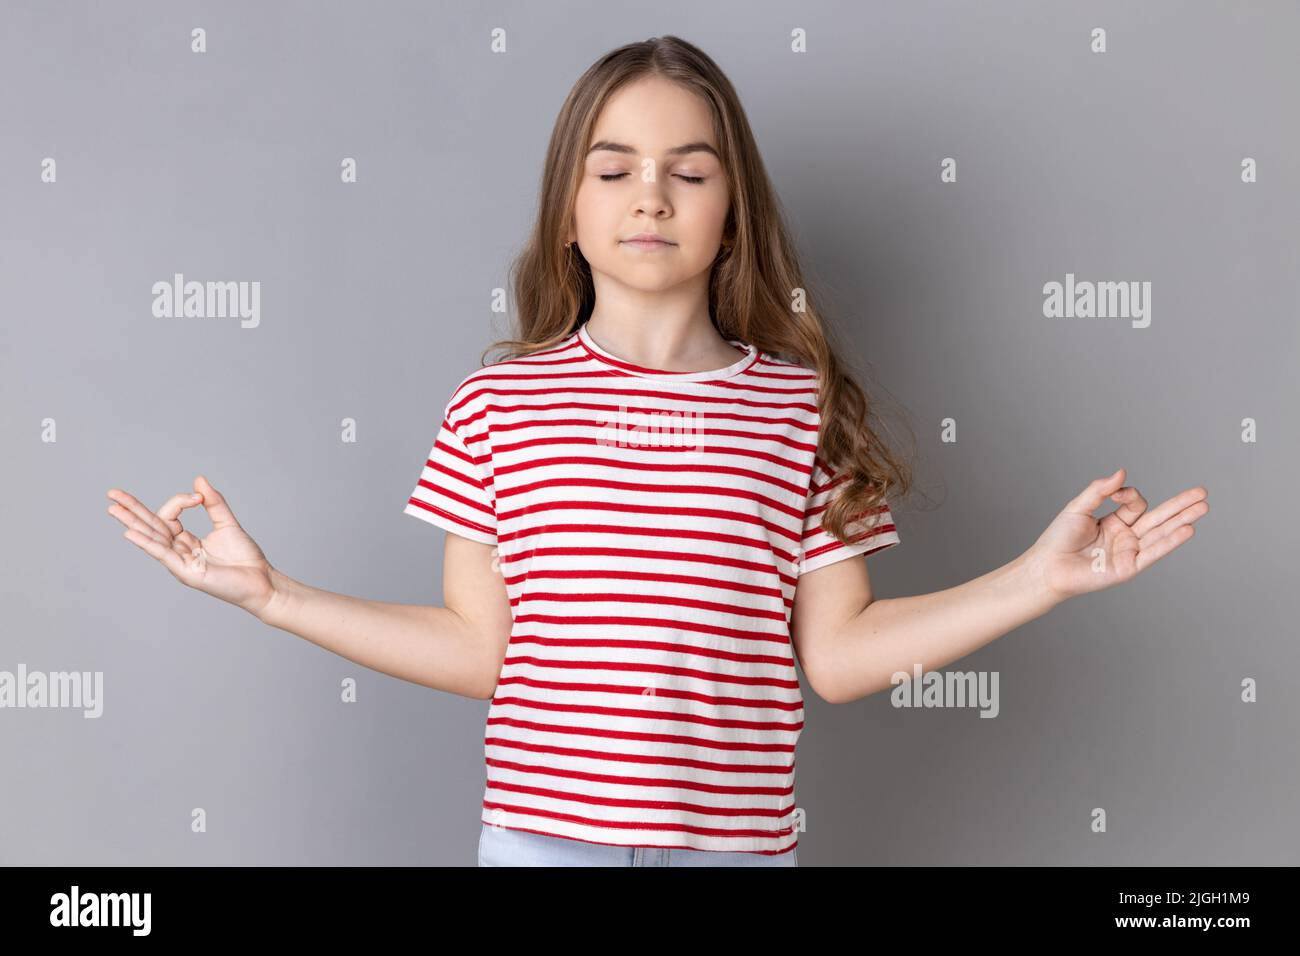 Ritratto di calma rilassata ragazza con t-shirt a righe che fa yoga, respirando, mantenendo gli occhi chiusi, calmando dopo la scuola. Studio interno girato isolato su sfondo grigio. Foto Stock